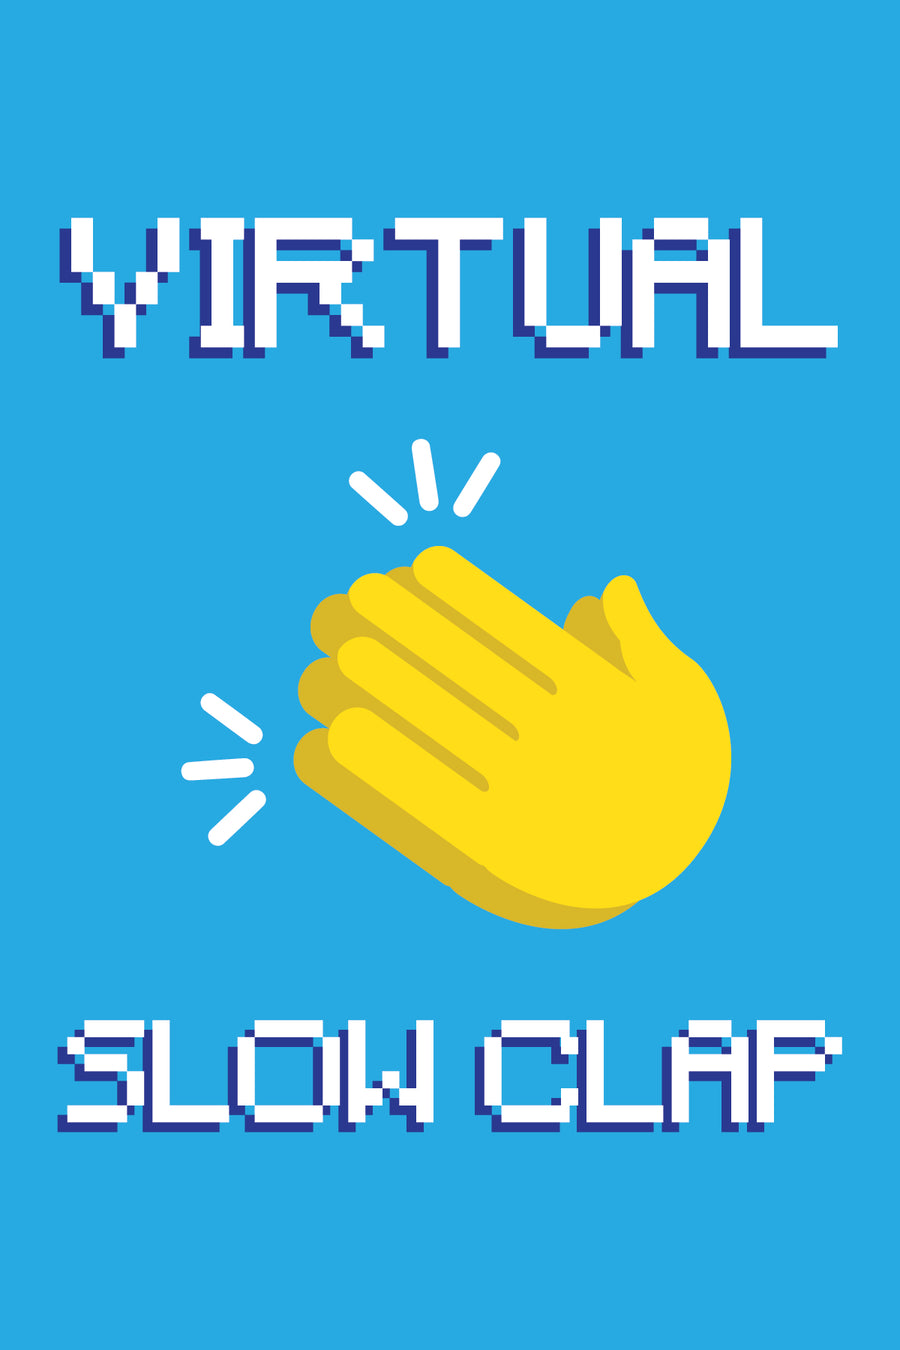 *virtual slow clap*